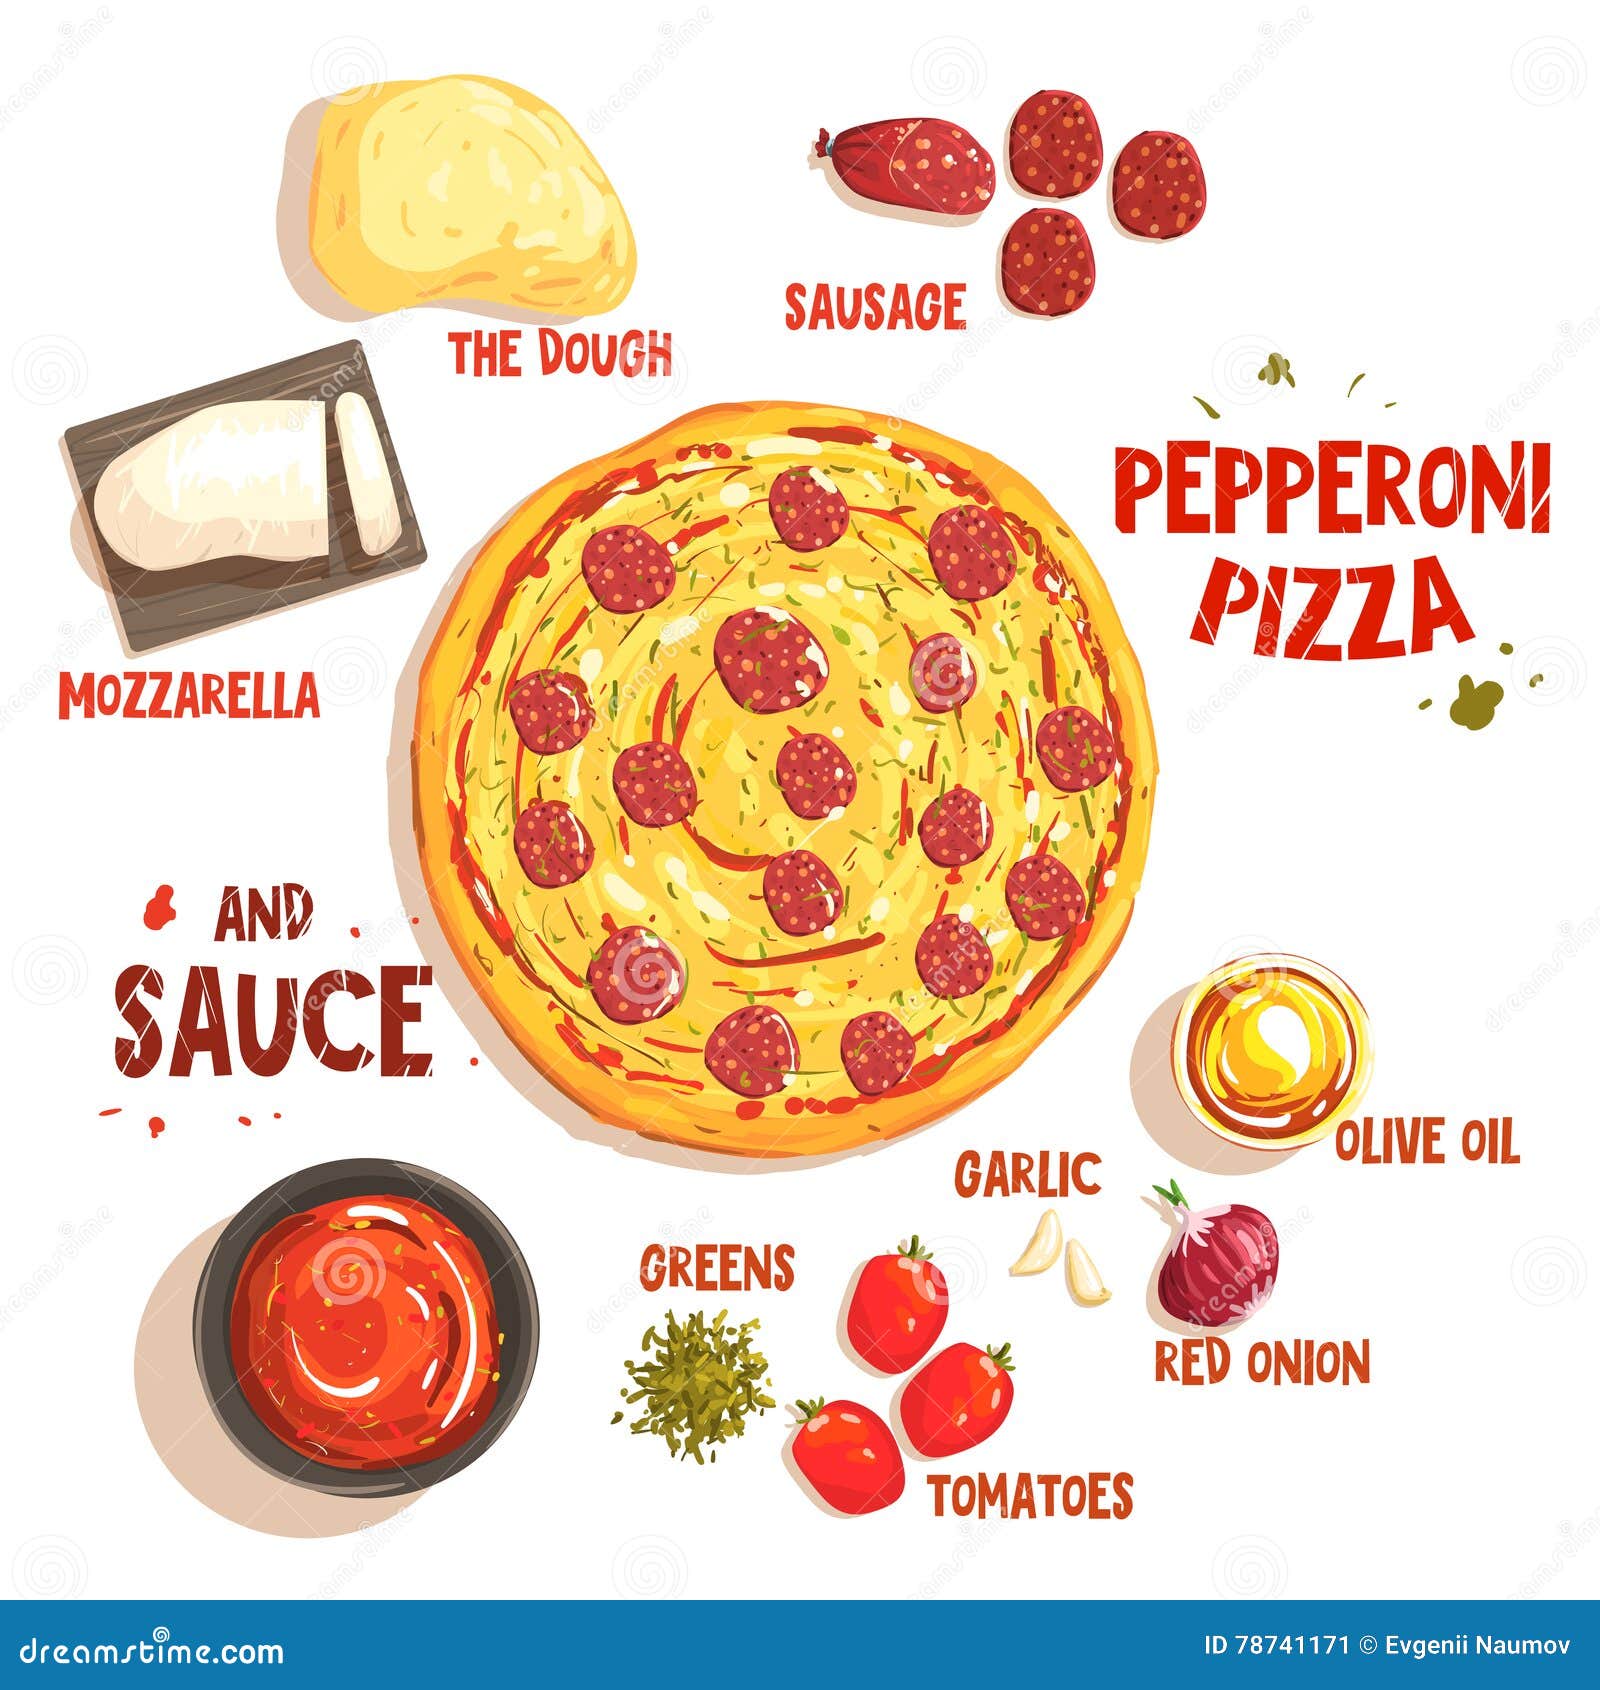 схема приготовления пиццы пепперони фото 75